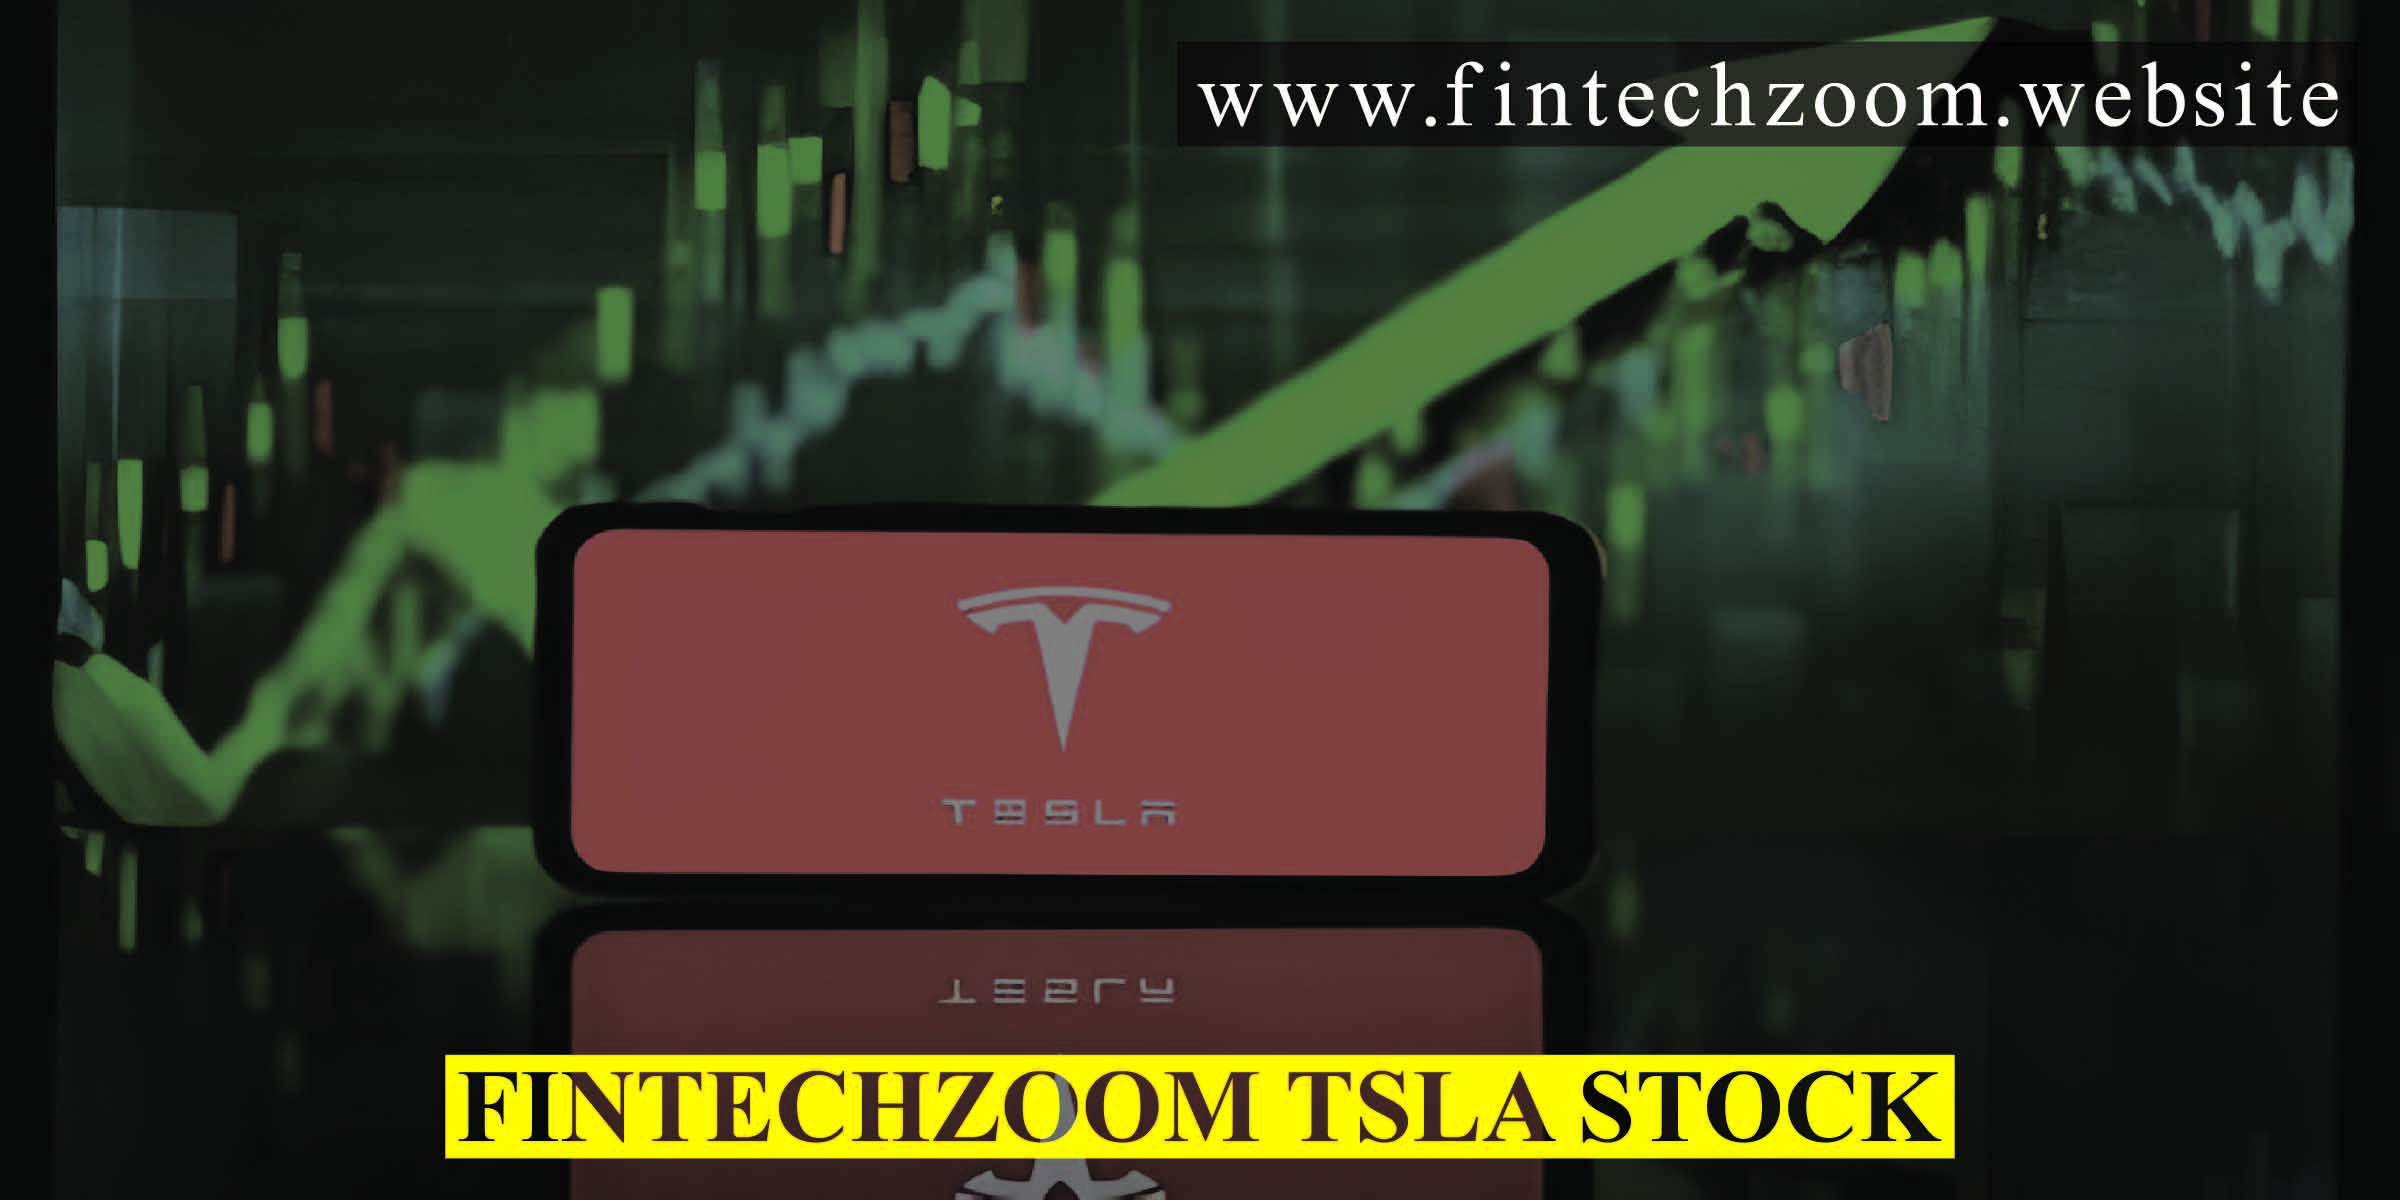 Fintechzoom TSLA Stock